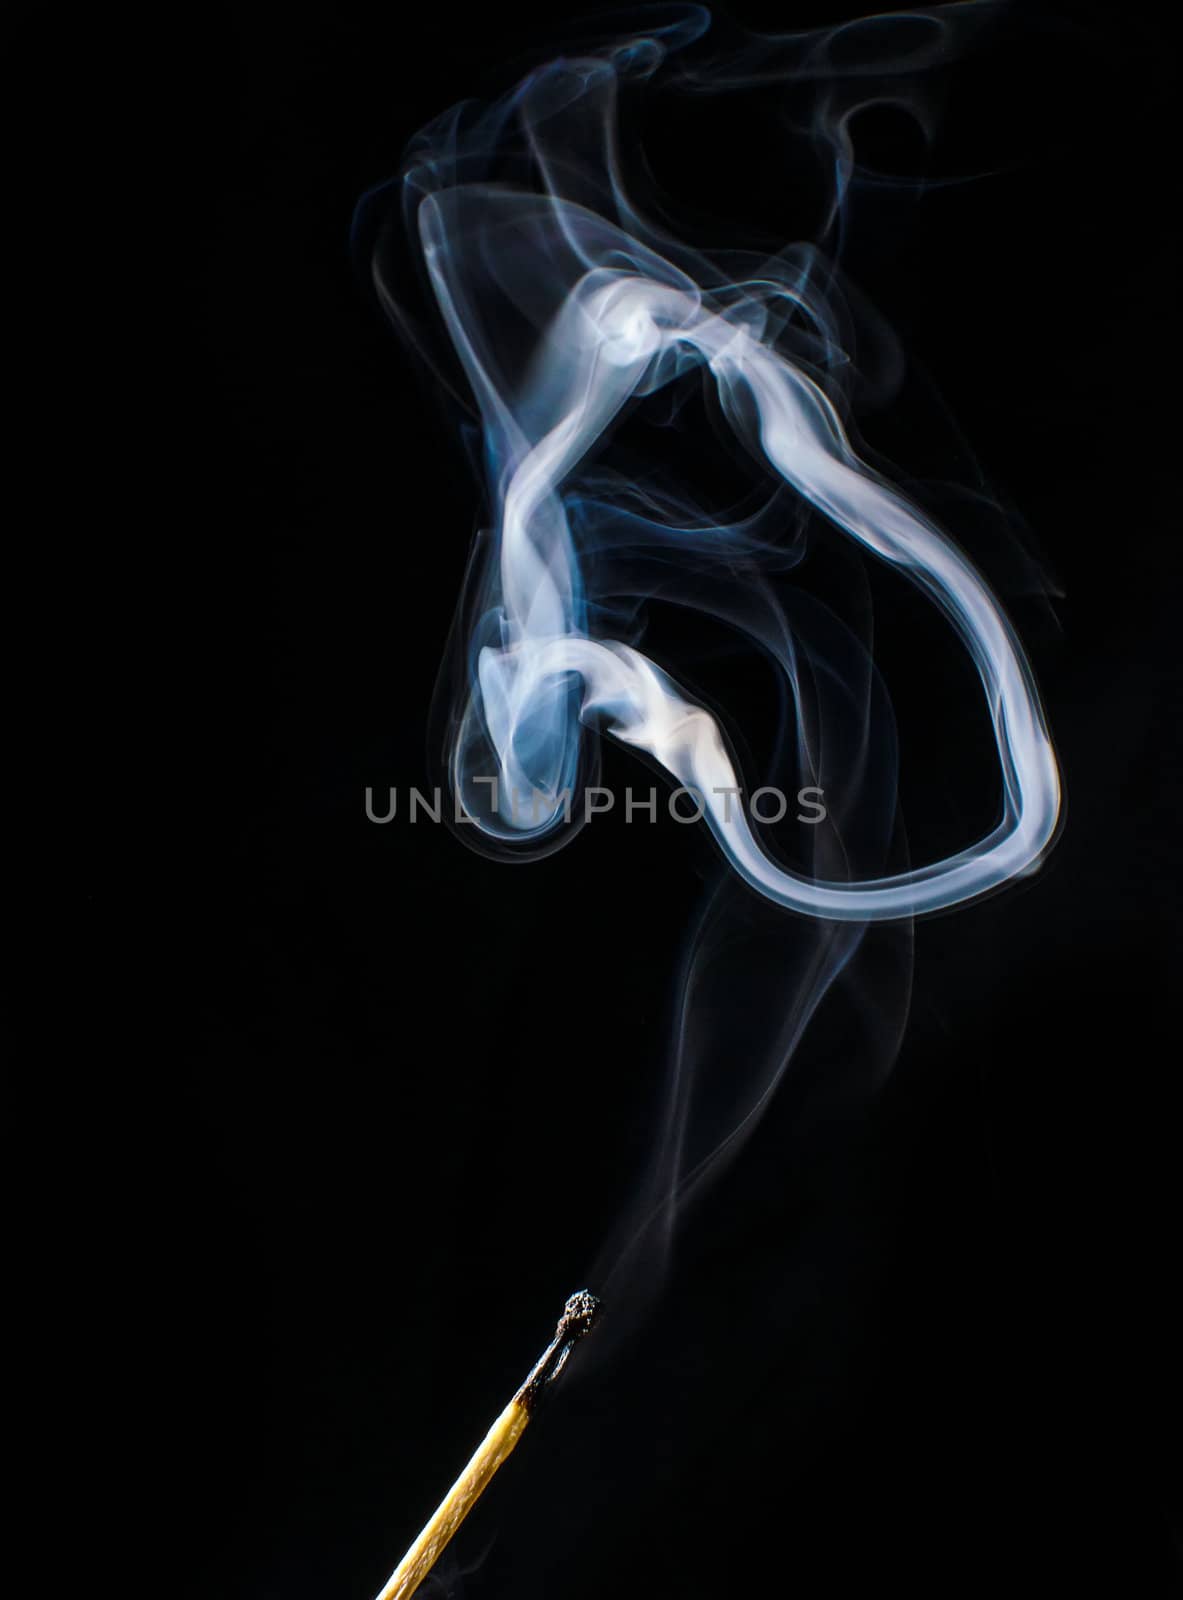 Fireless match and circle of smoke on black background